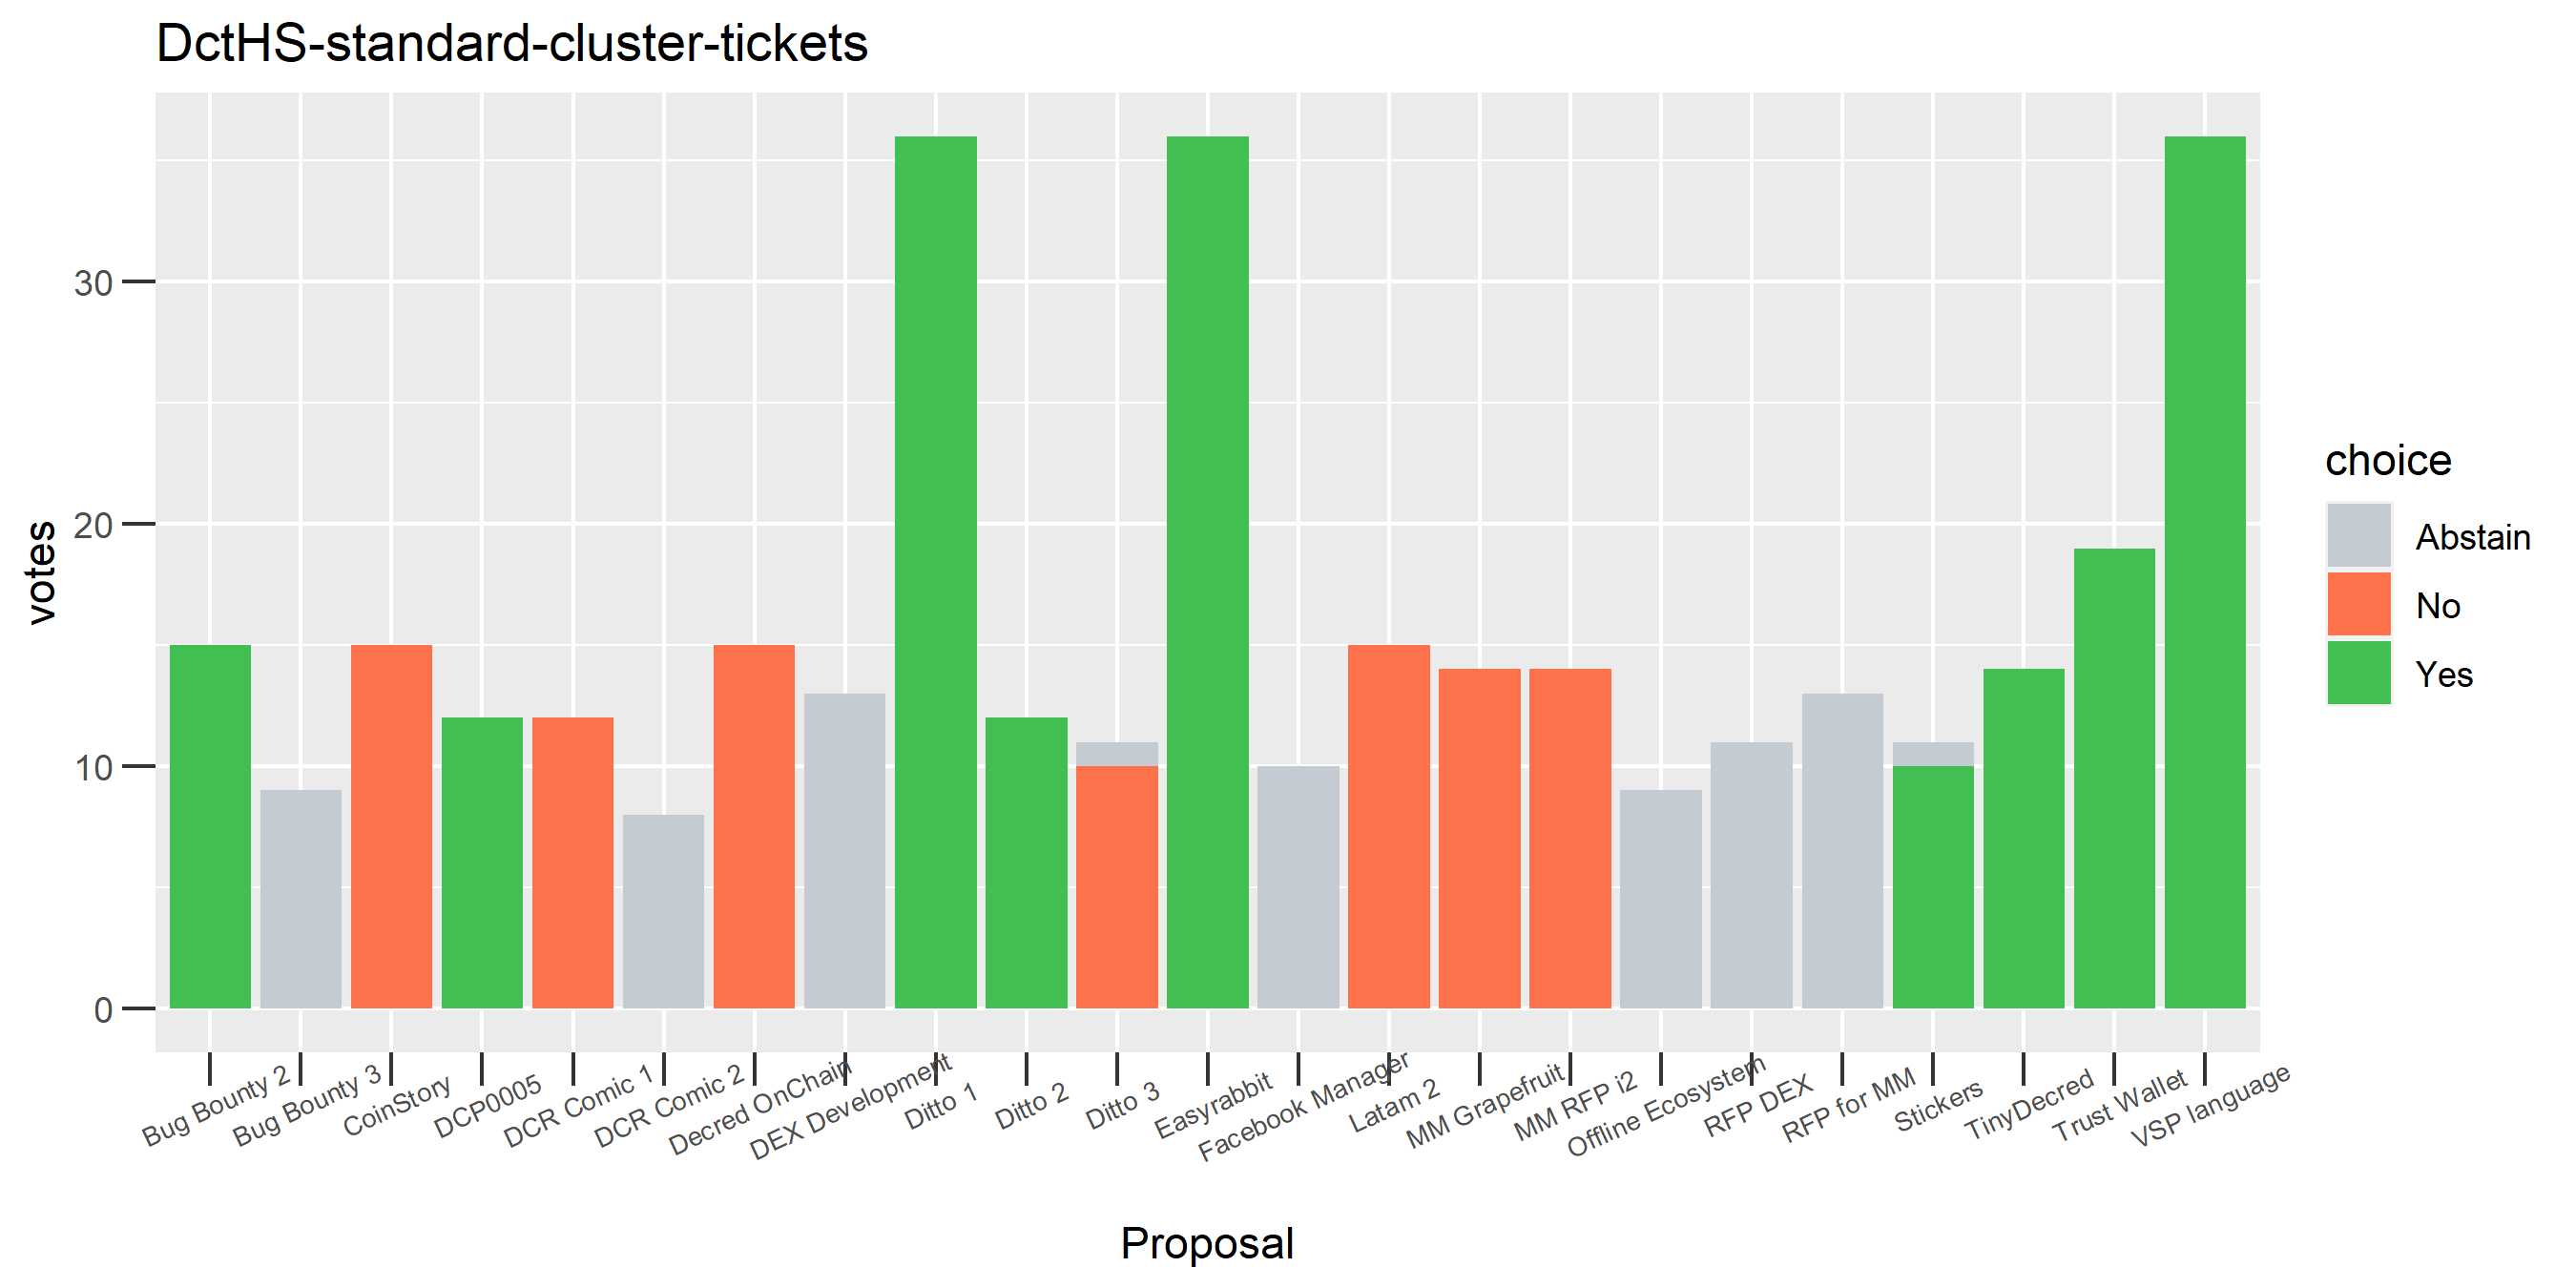 DctHS-standard-cluster-tickets